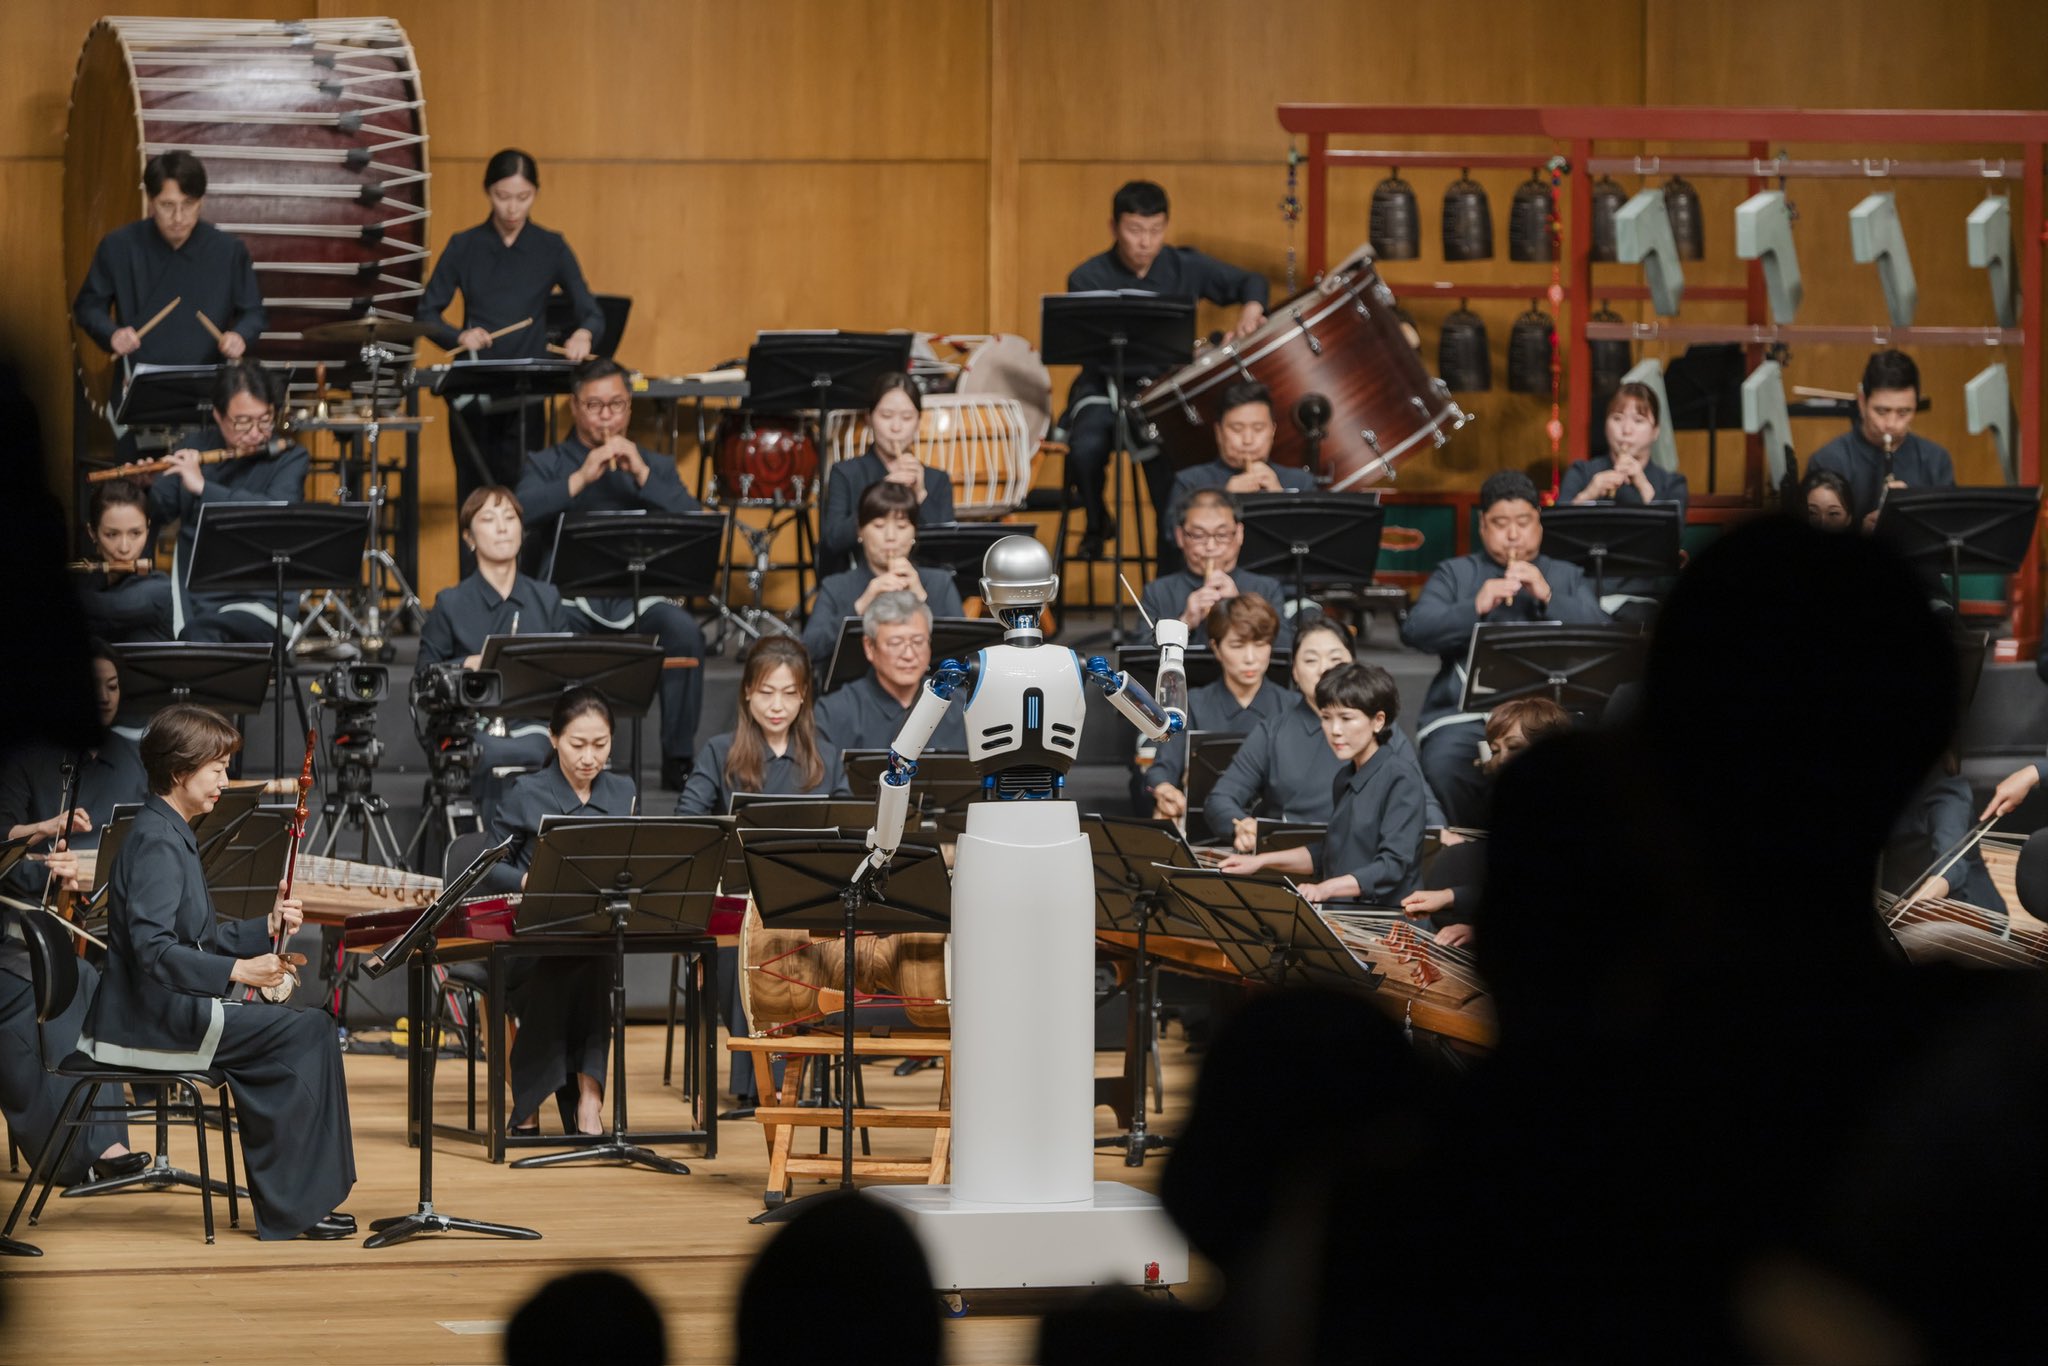 Robot Orquesta Sinfónica Corea